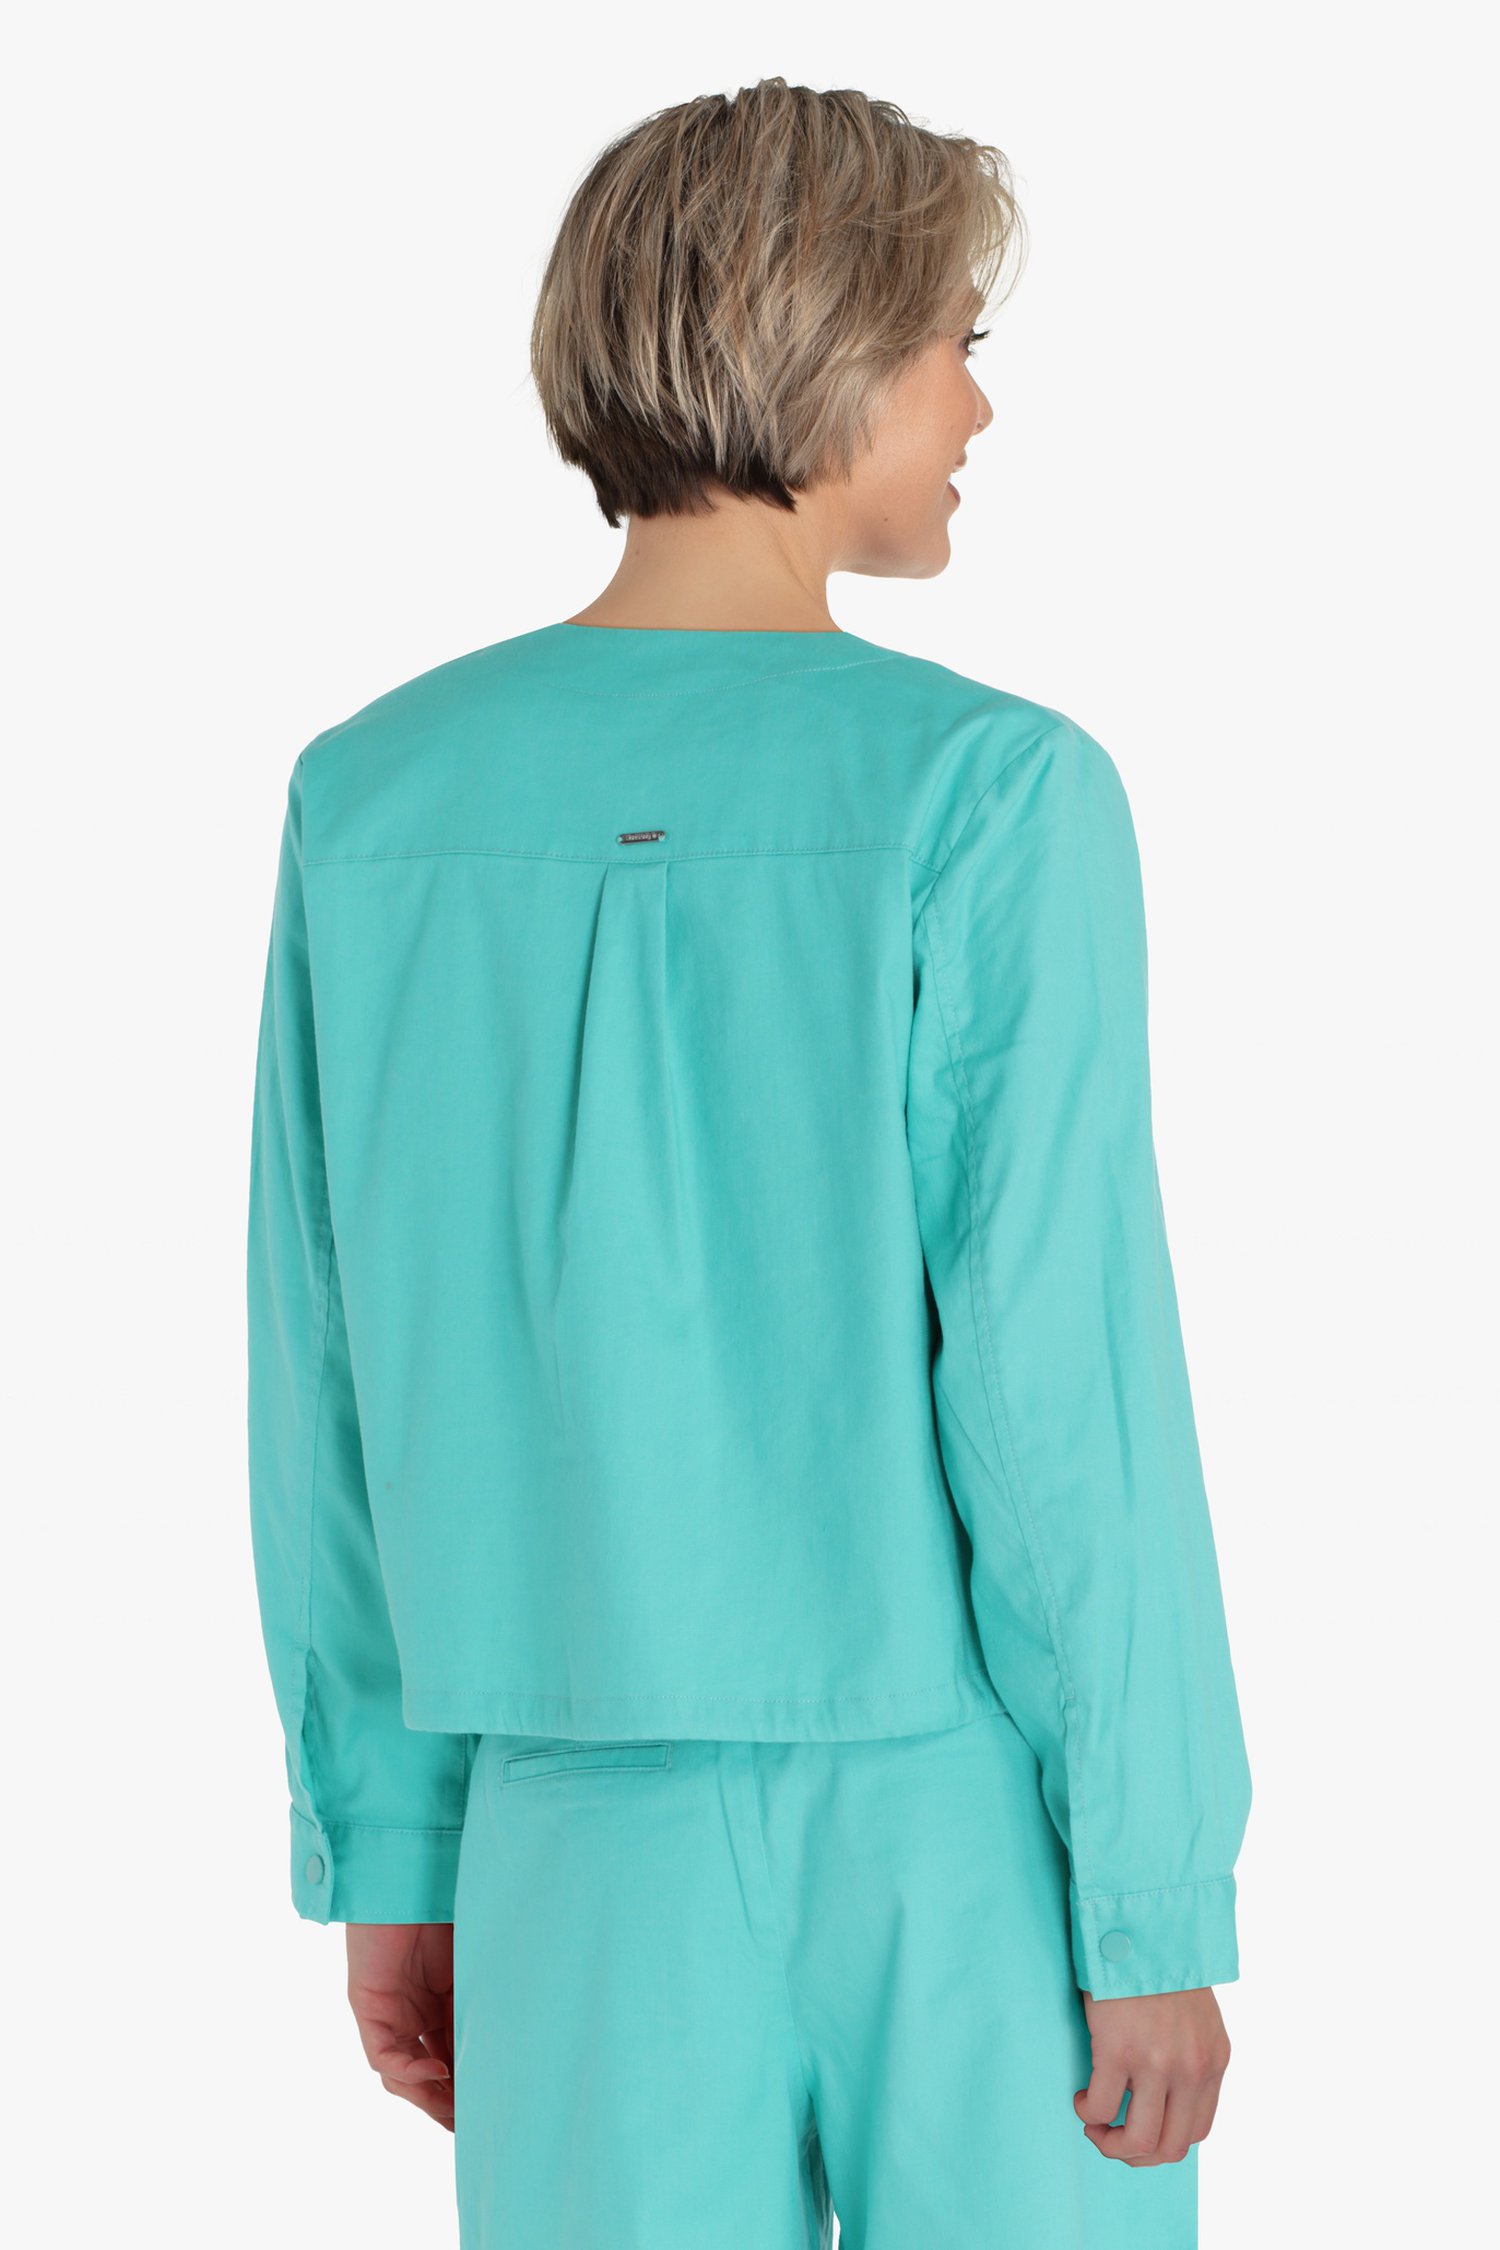 Vest turquoise de Diane Laury pour Femmes